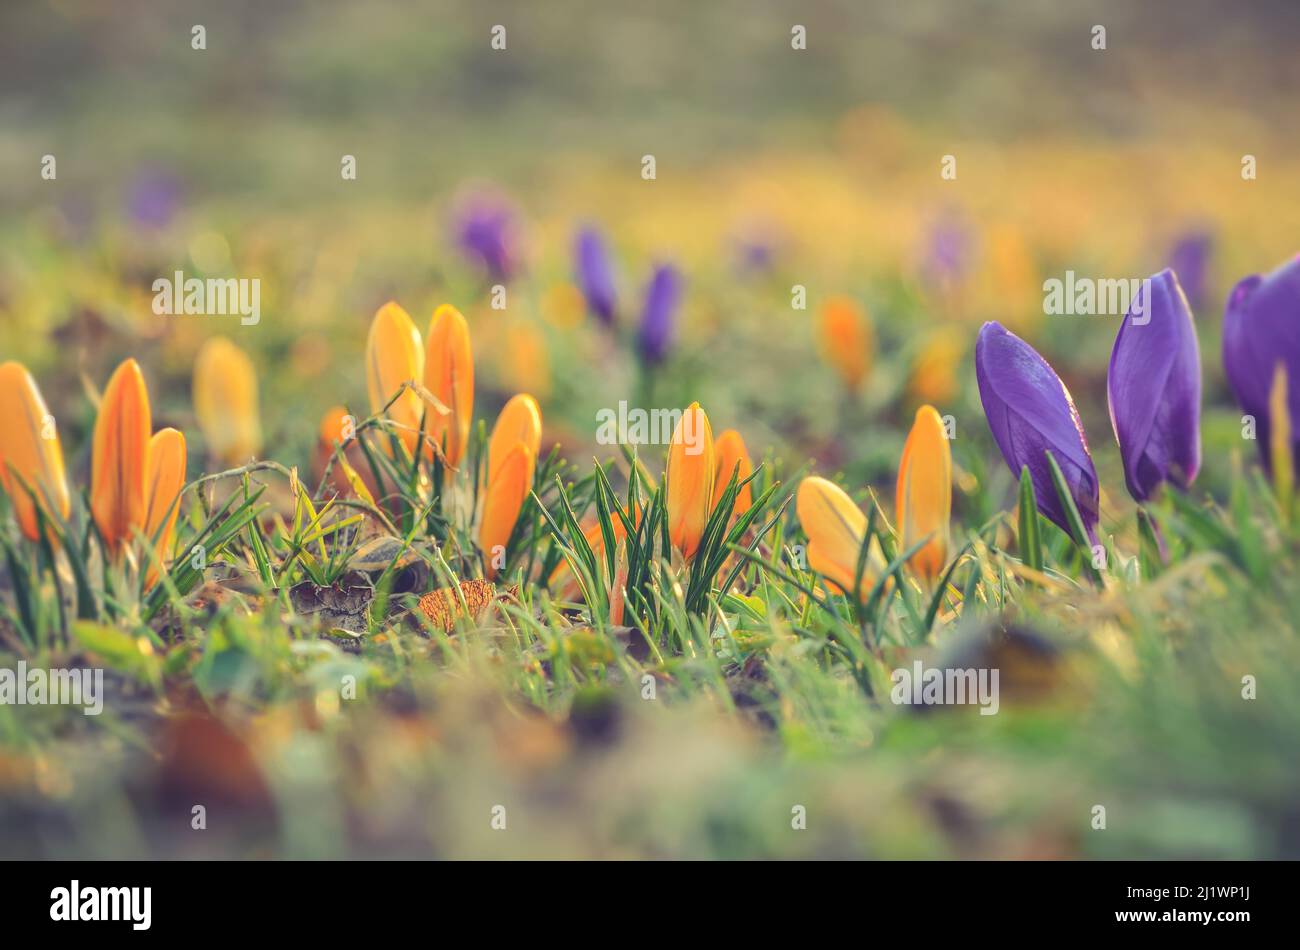 Farbenfroher natürlicher Hintergrund mit Blumen. Schöne Krokusse auf einer grünen Lichtung, um den Frühling zu begrüßen. Foto in geringer Schärfentiefe. Stockfoto